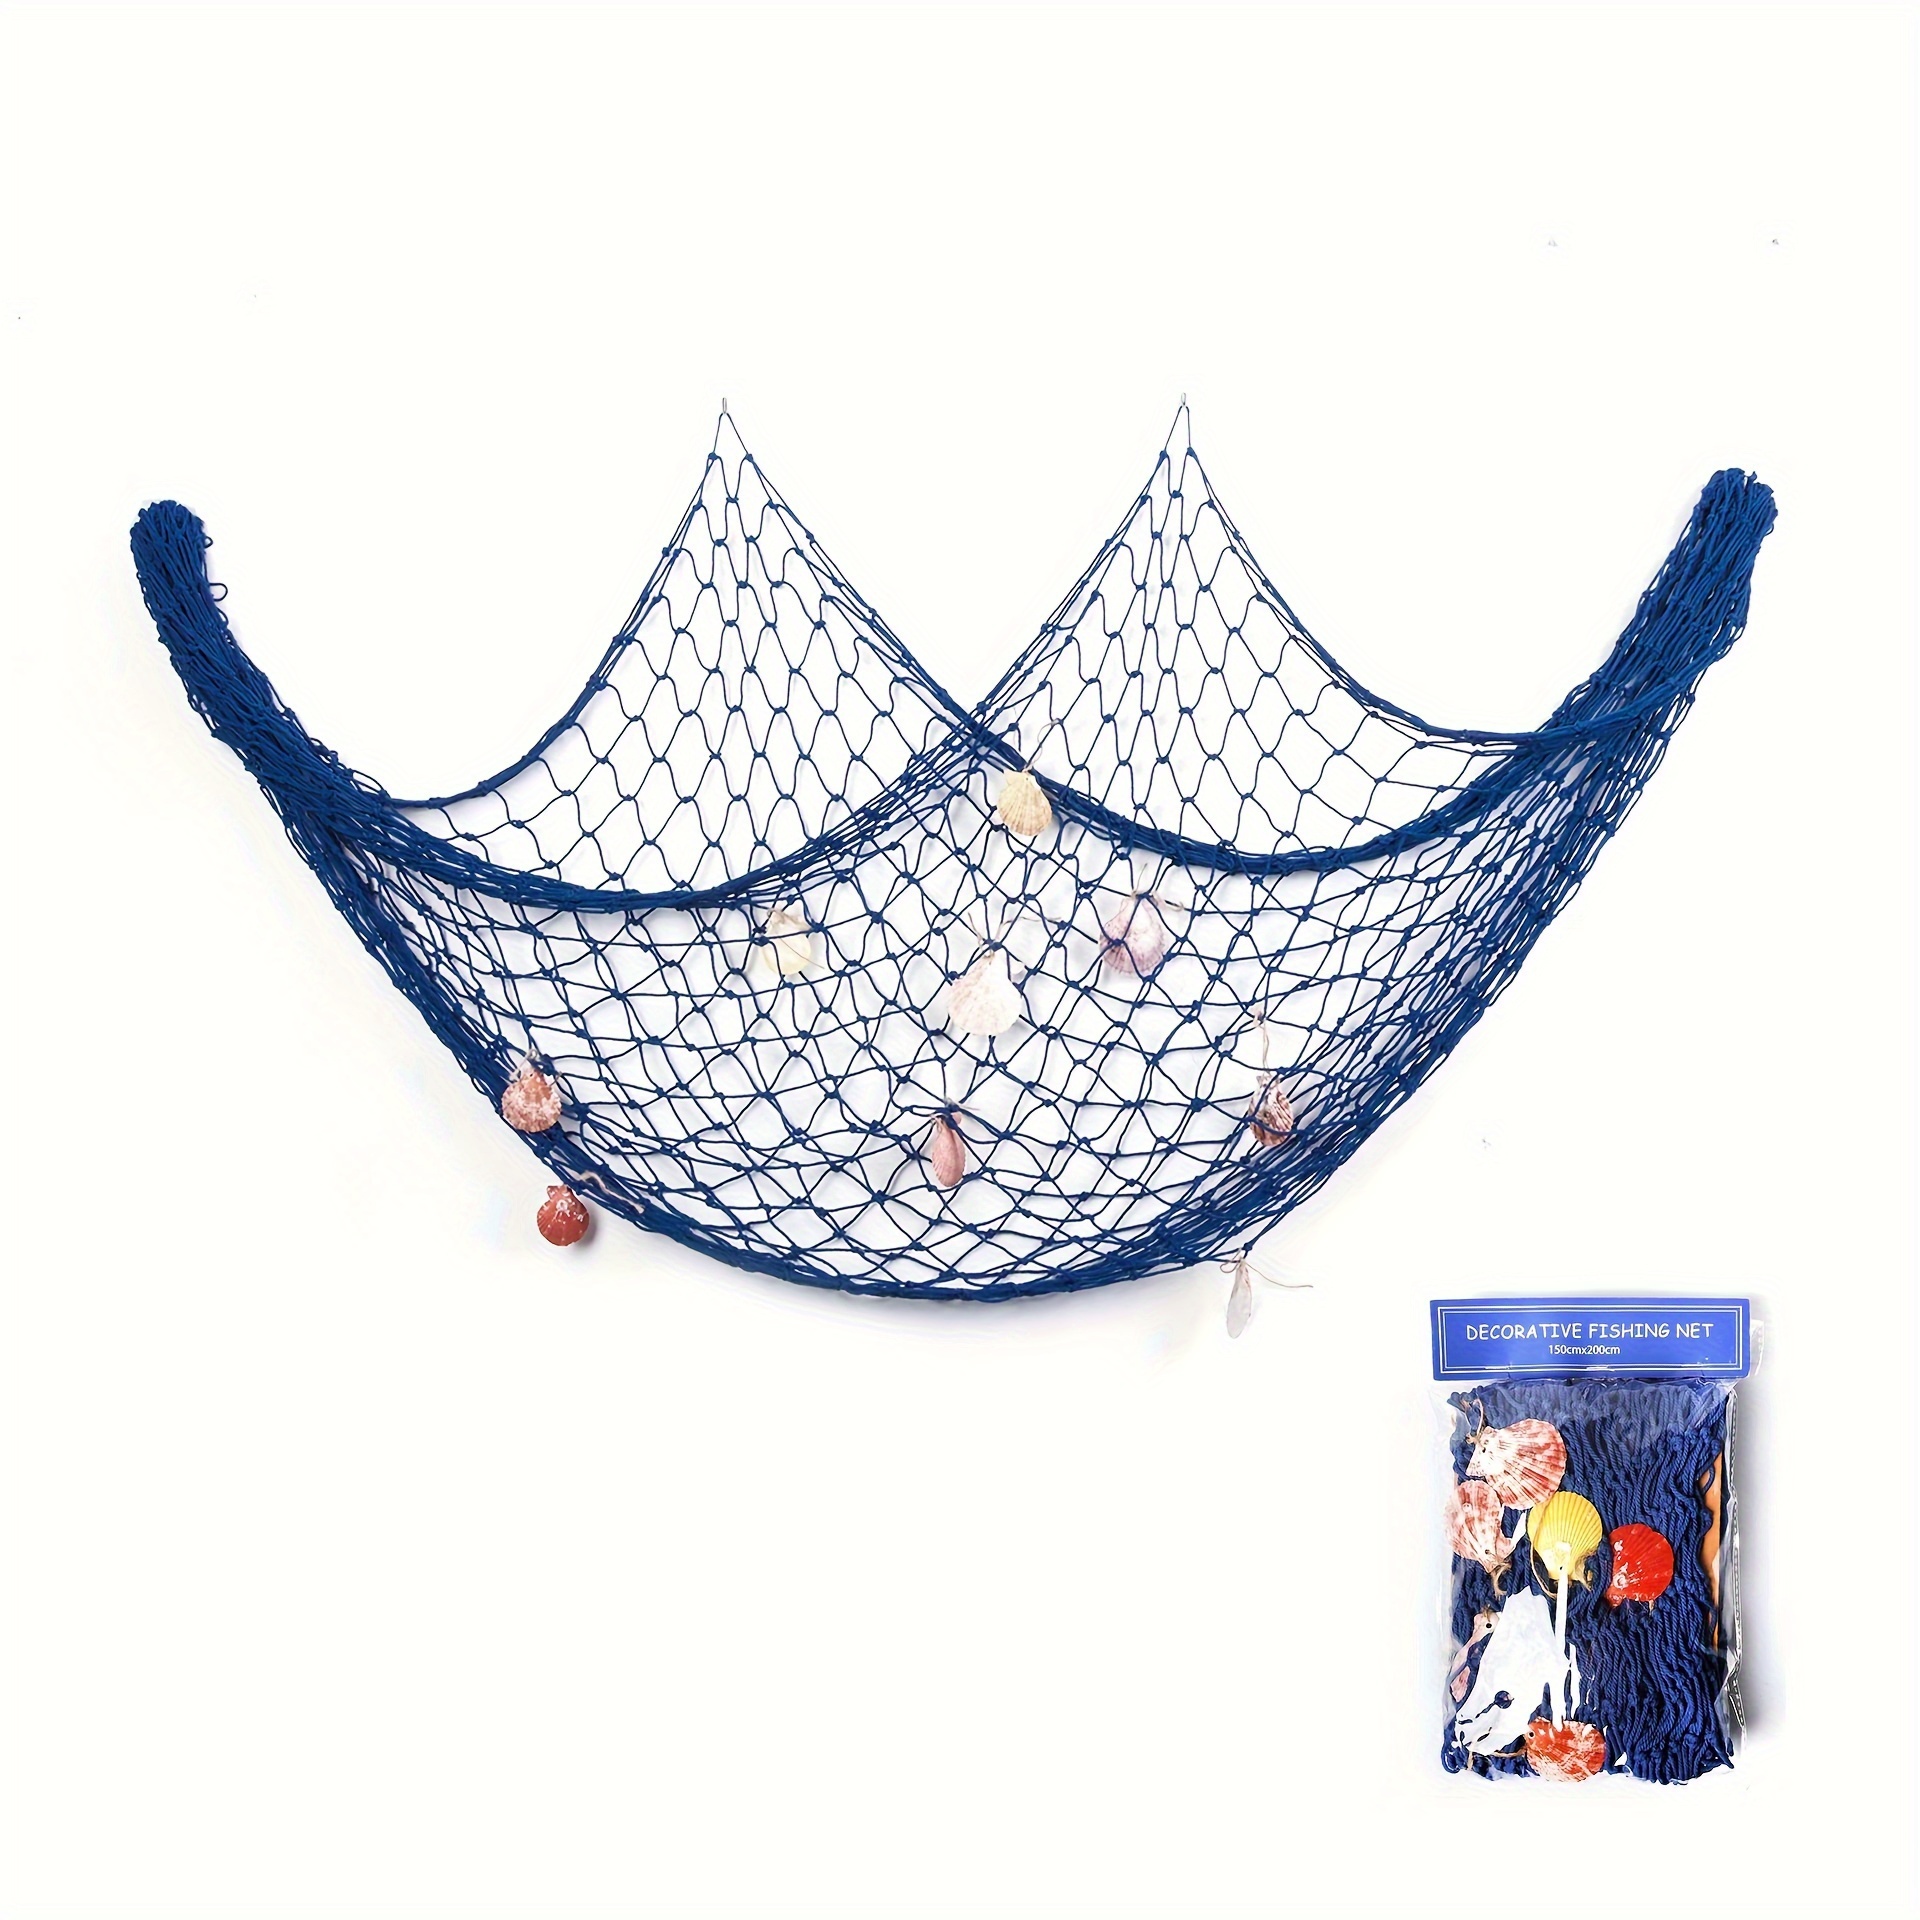 Decorative Fishing Net Dark Blue & Beige 80x40 Inch 2 Dark Blue/Beige-2Pack